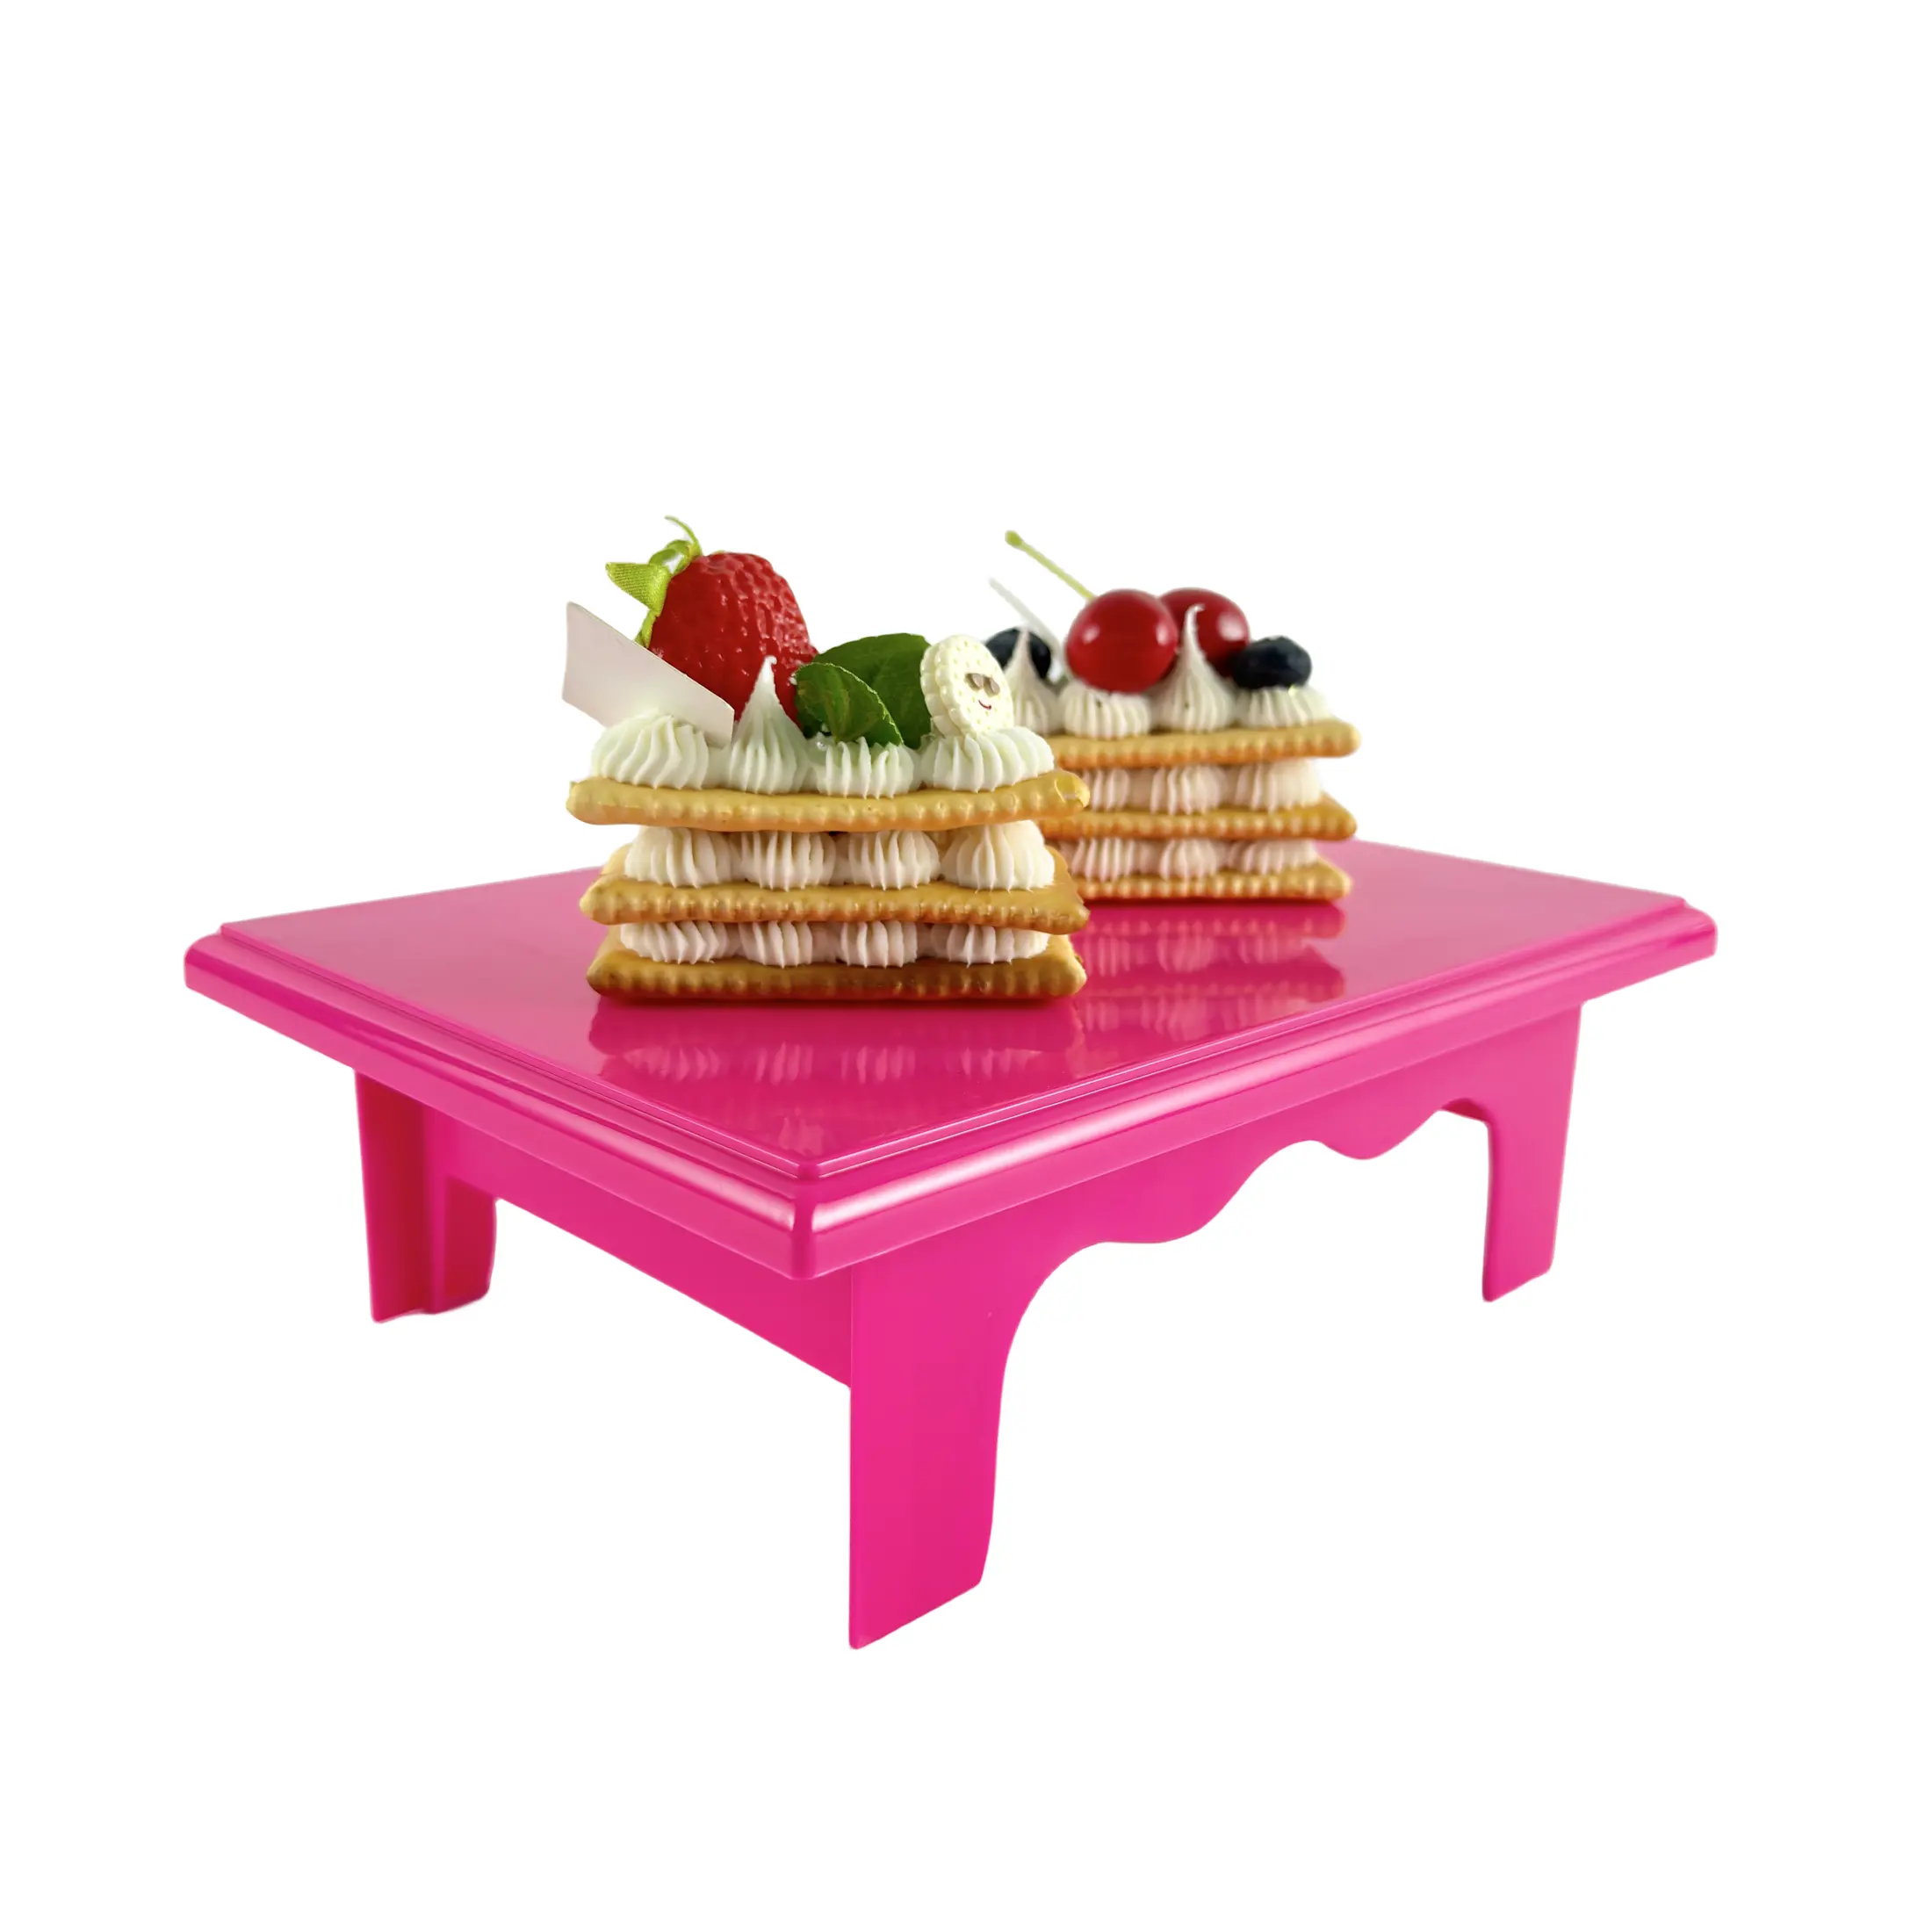 Groothandel Kleurrijke Bruiloft Cupcake Kartonnen Stand Party Servies Food Display Tray Cake Stand